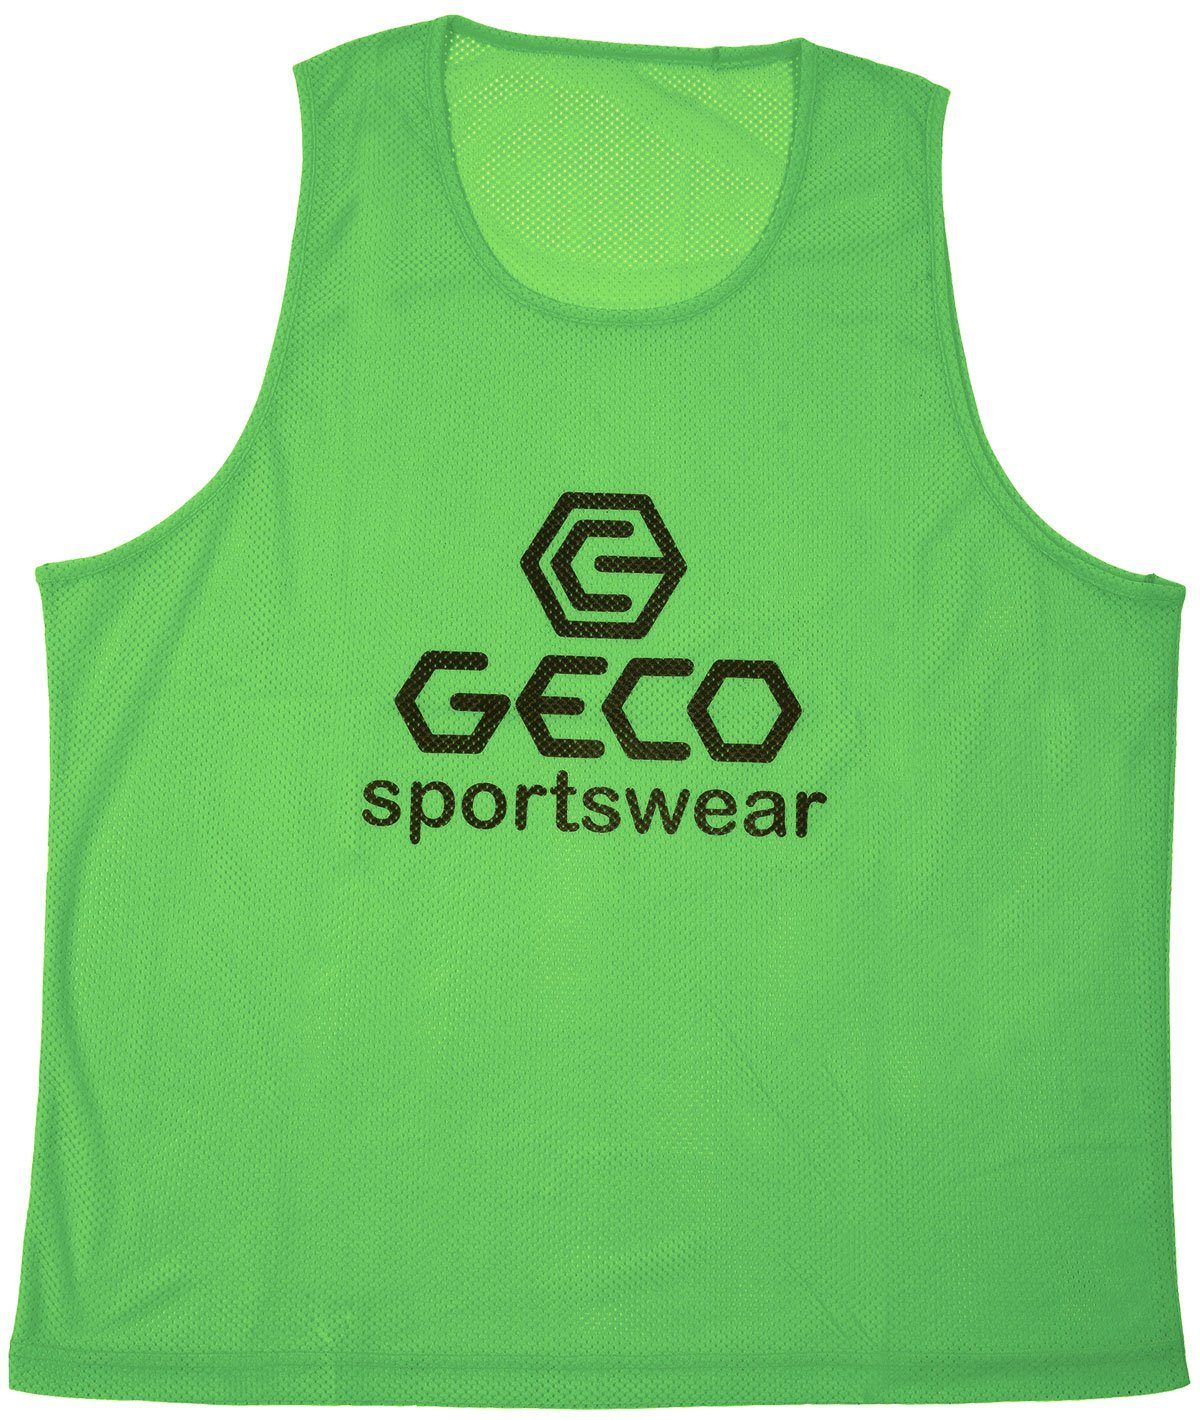 Geco Sportswear Markierungshemdchen Neon Farben Trainingsleibchen Trainingsleibchen Geco Neon grün